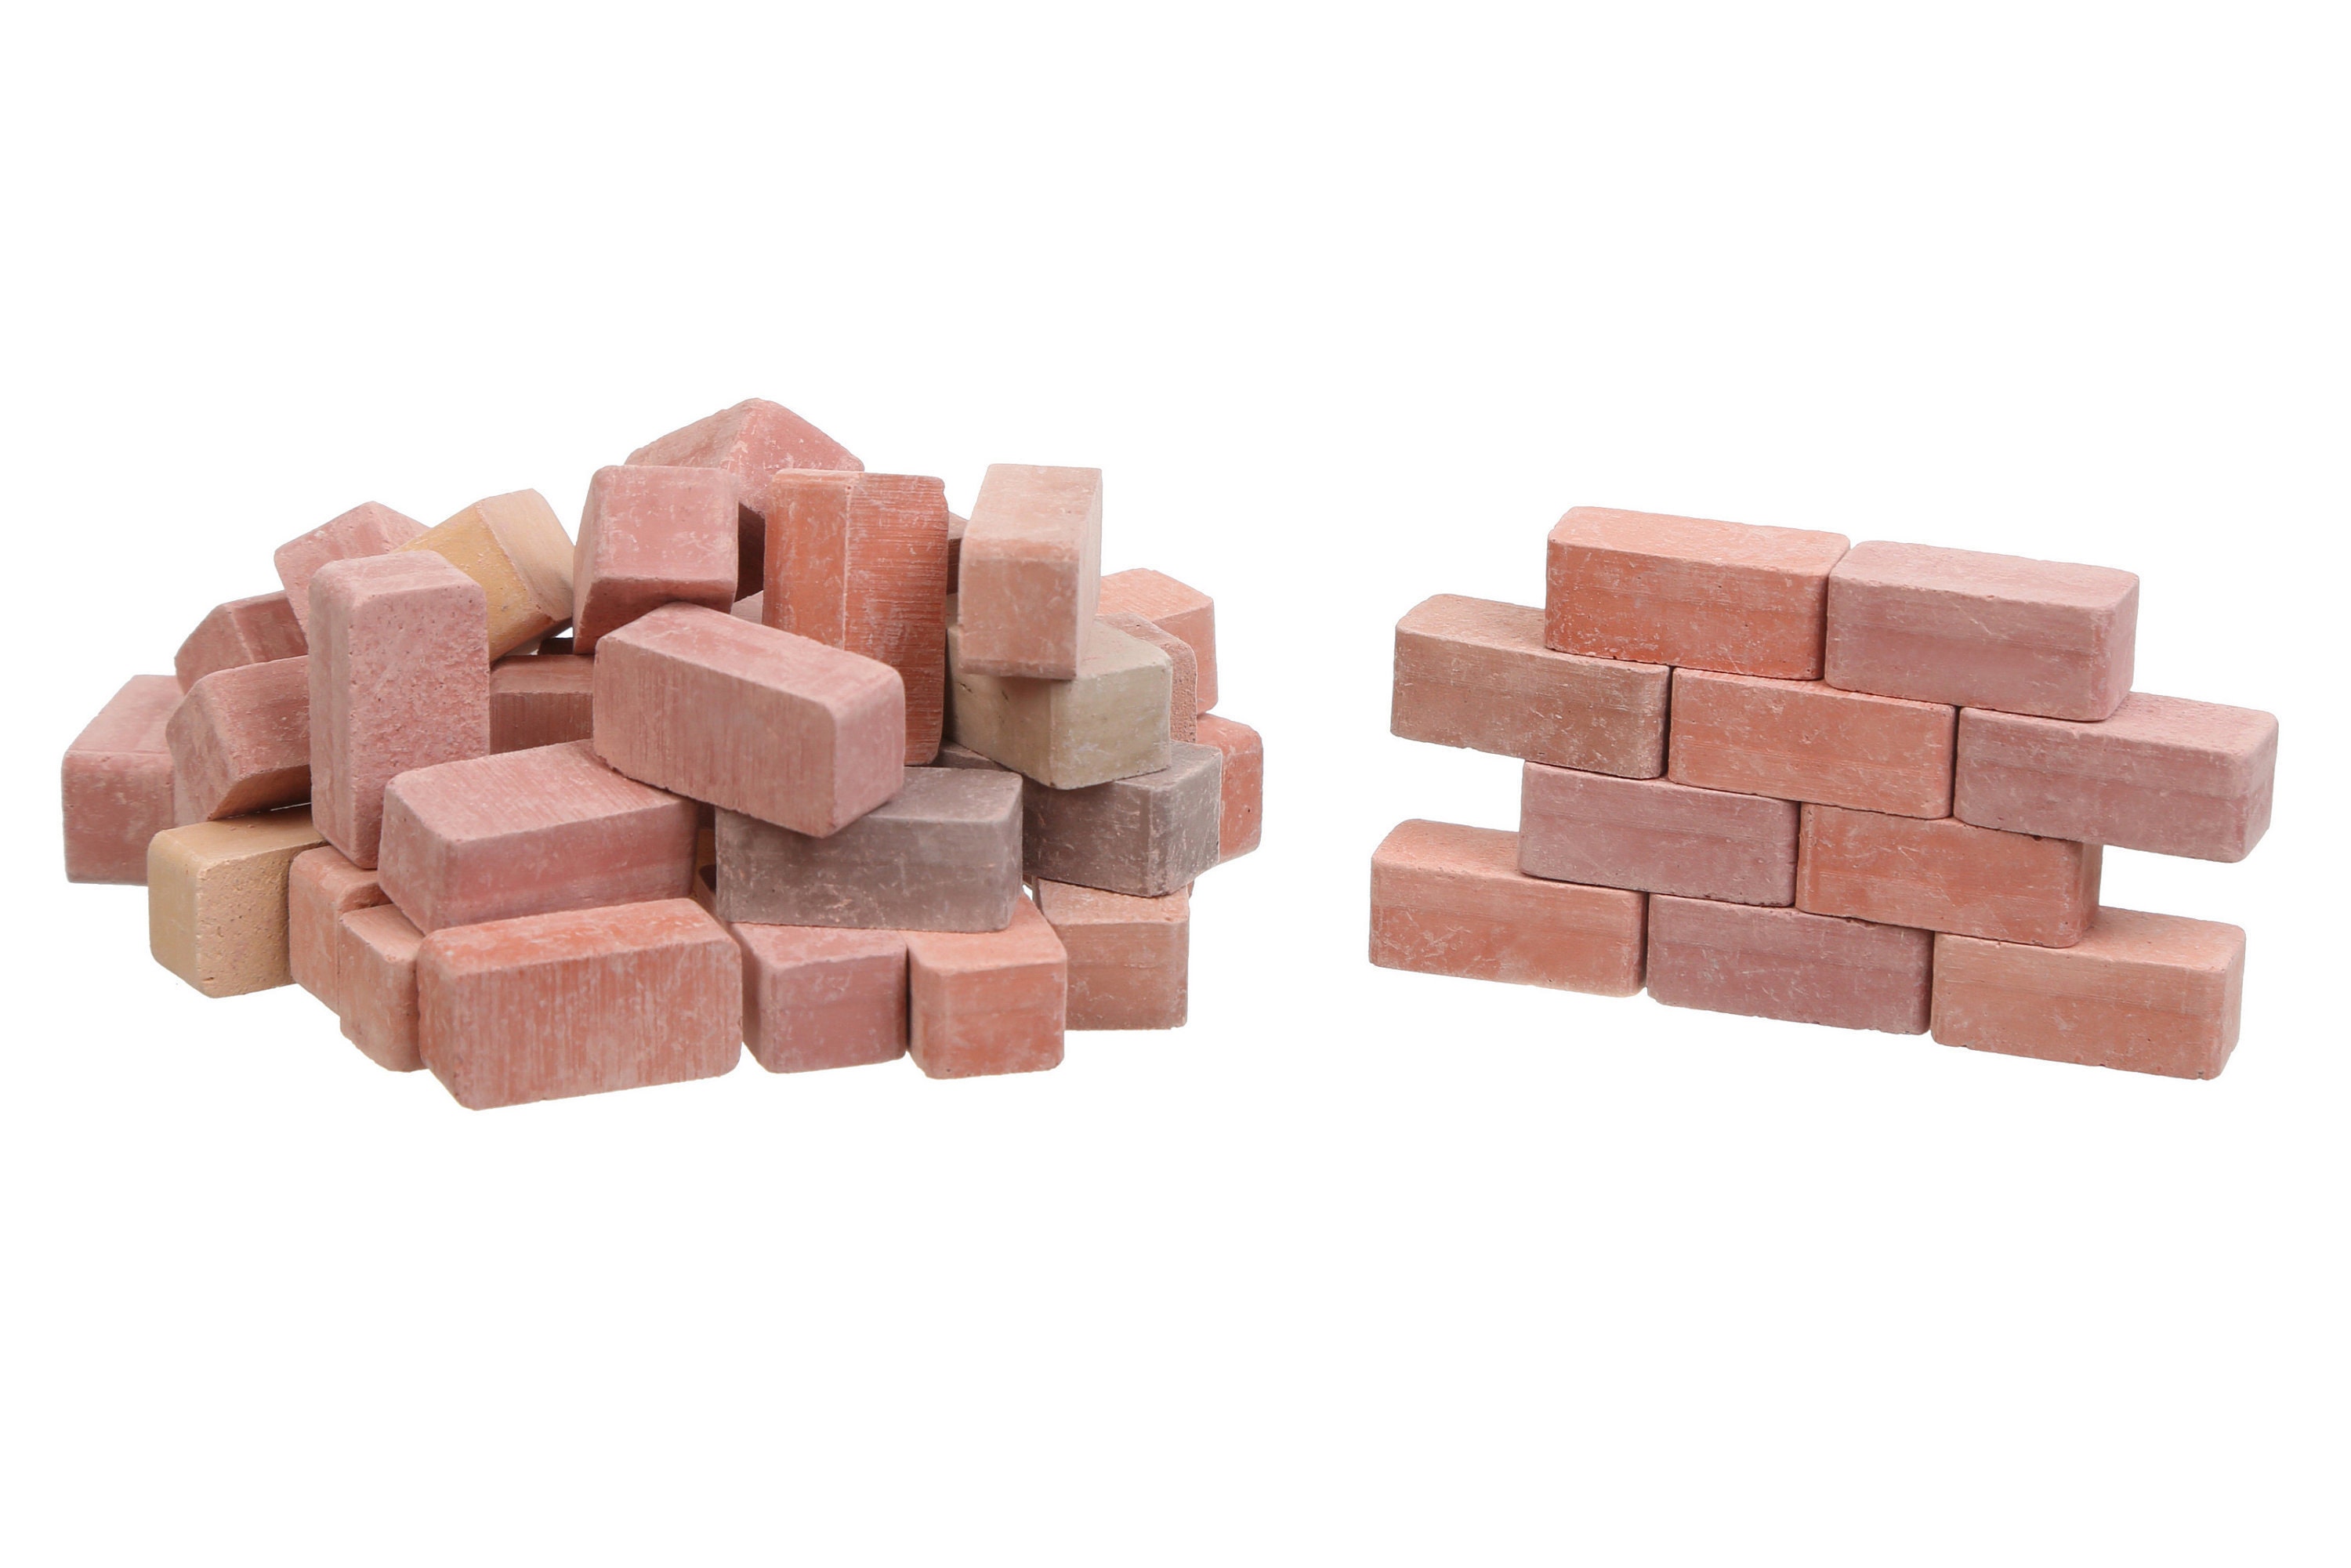 Mini Bricks, Mini Pavers, Miniature Bricks, School Project, Dollhouse  Bricks, Miniature Bricks for Model Stones Walls, Floors, Stone Bricks 